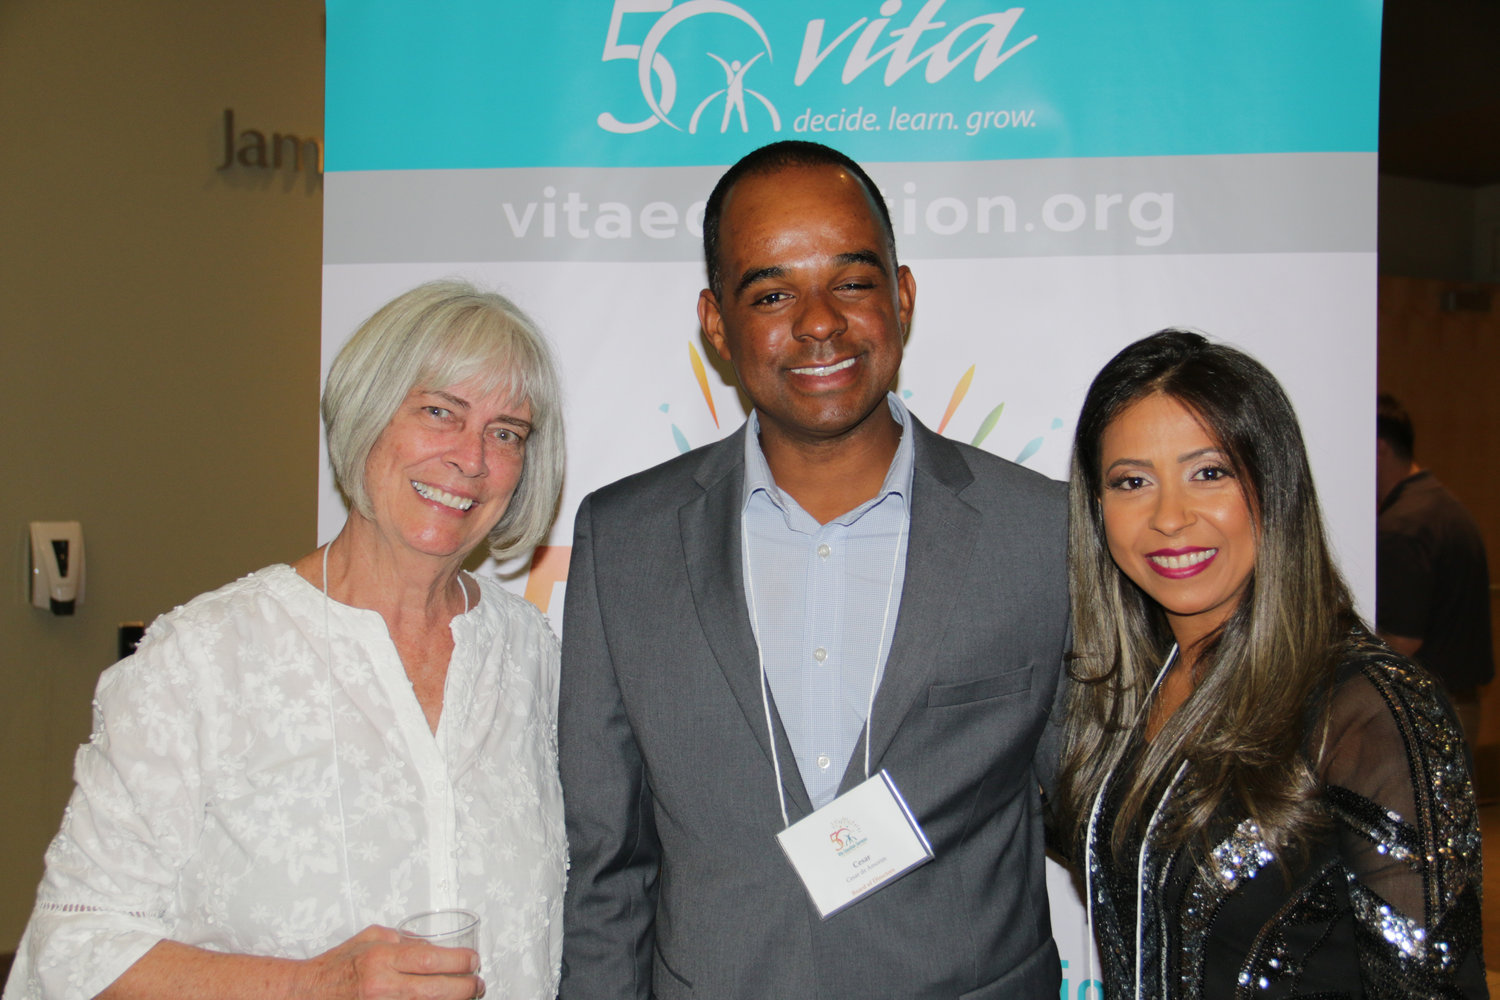 Vita board members Ellen Happ and Cesar de Amorim with his wife, Lucilene.